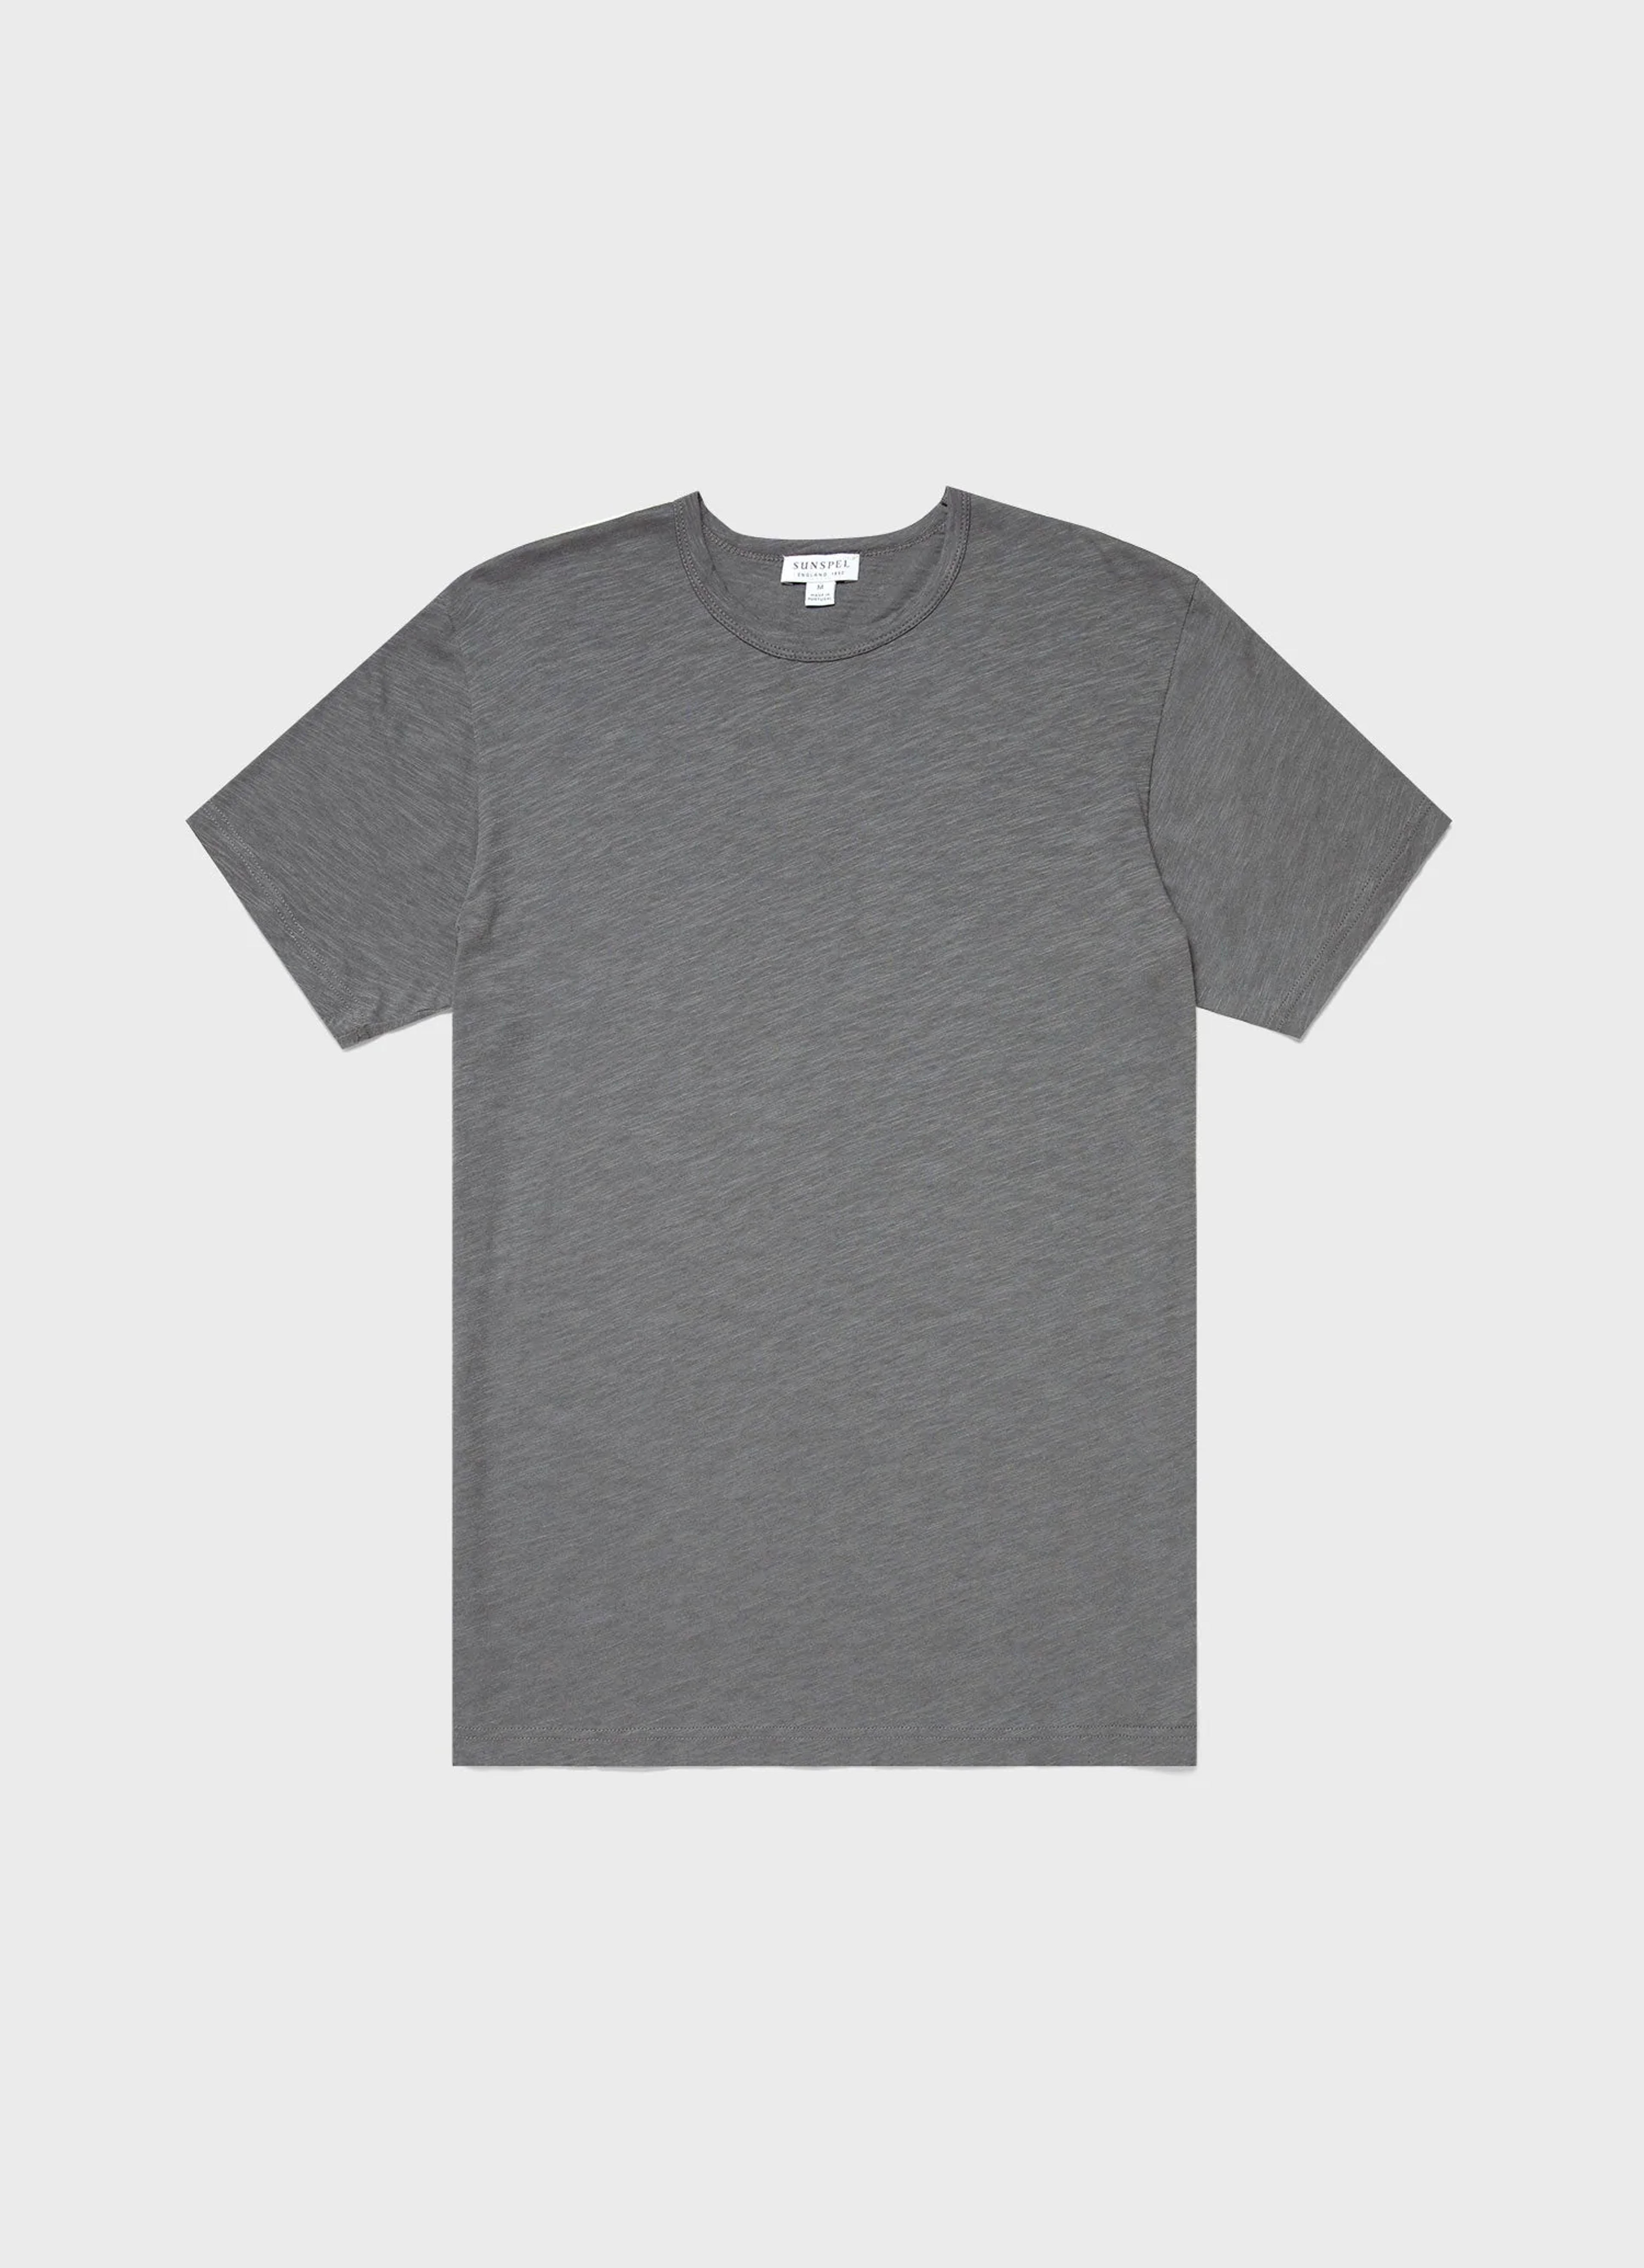 Men's Cotton Linen T-Shirt in Lead | Sunspel